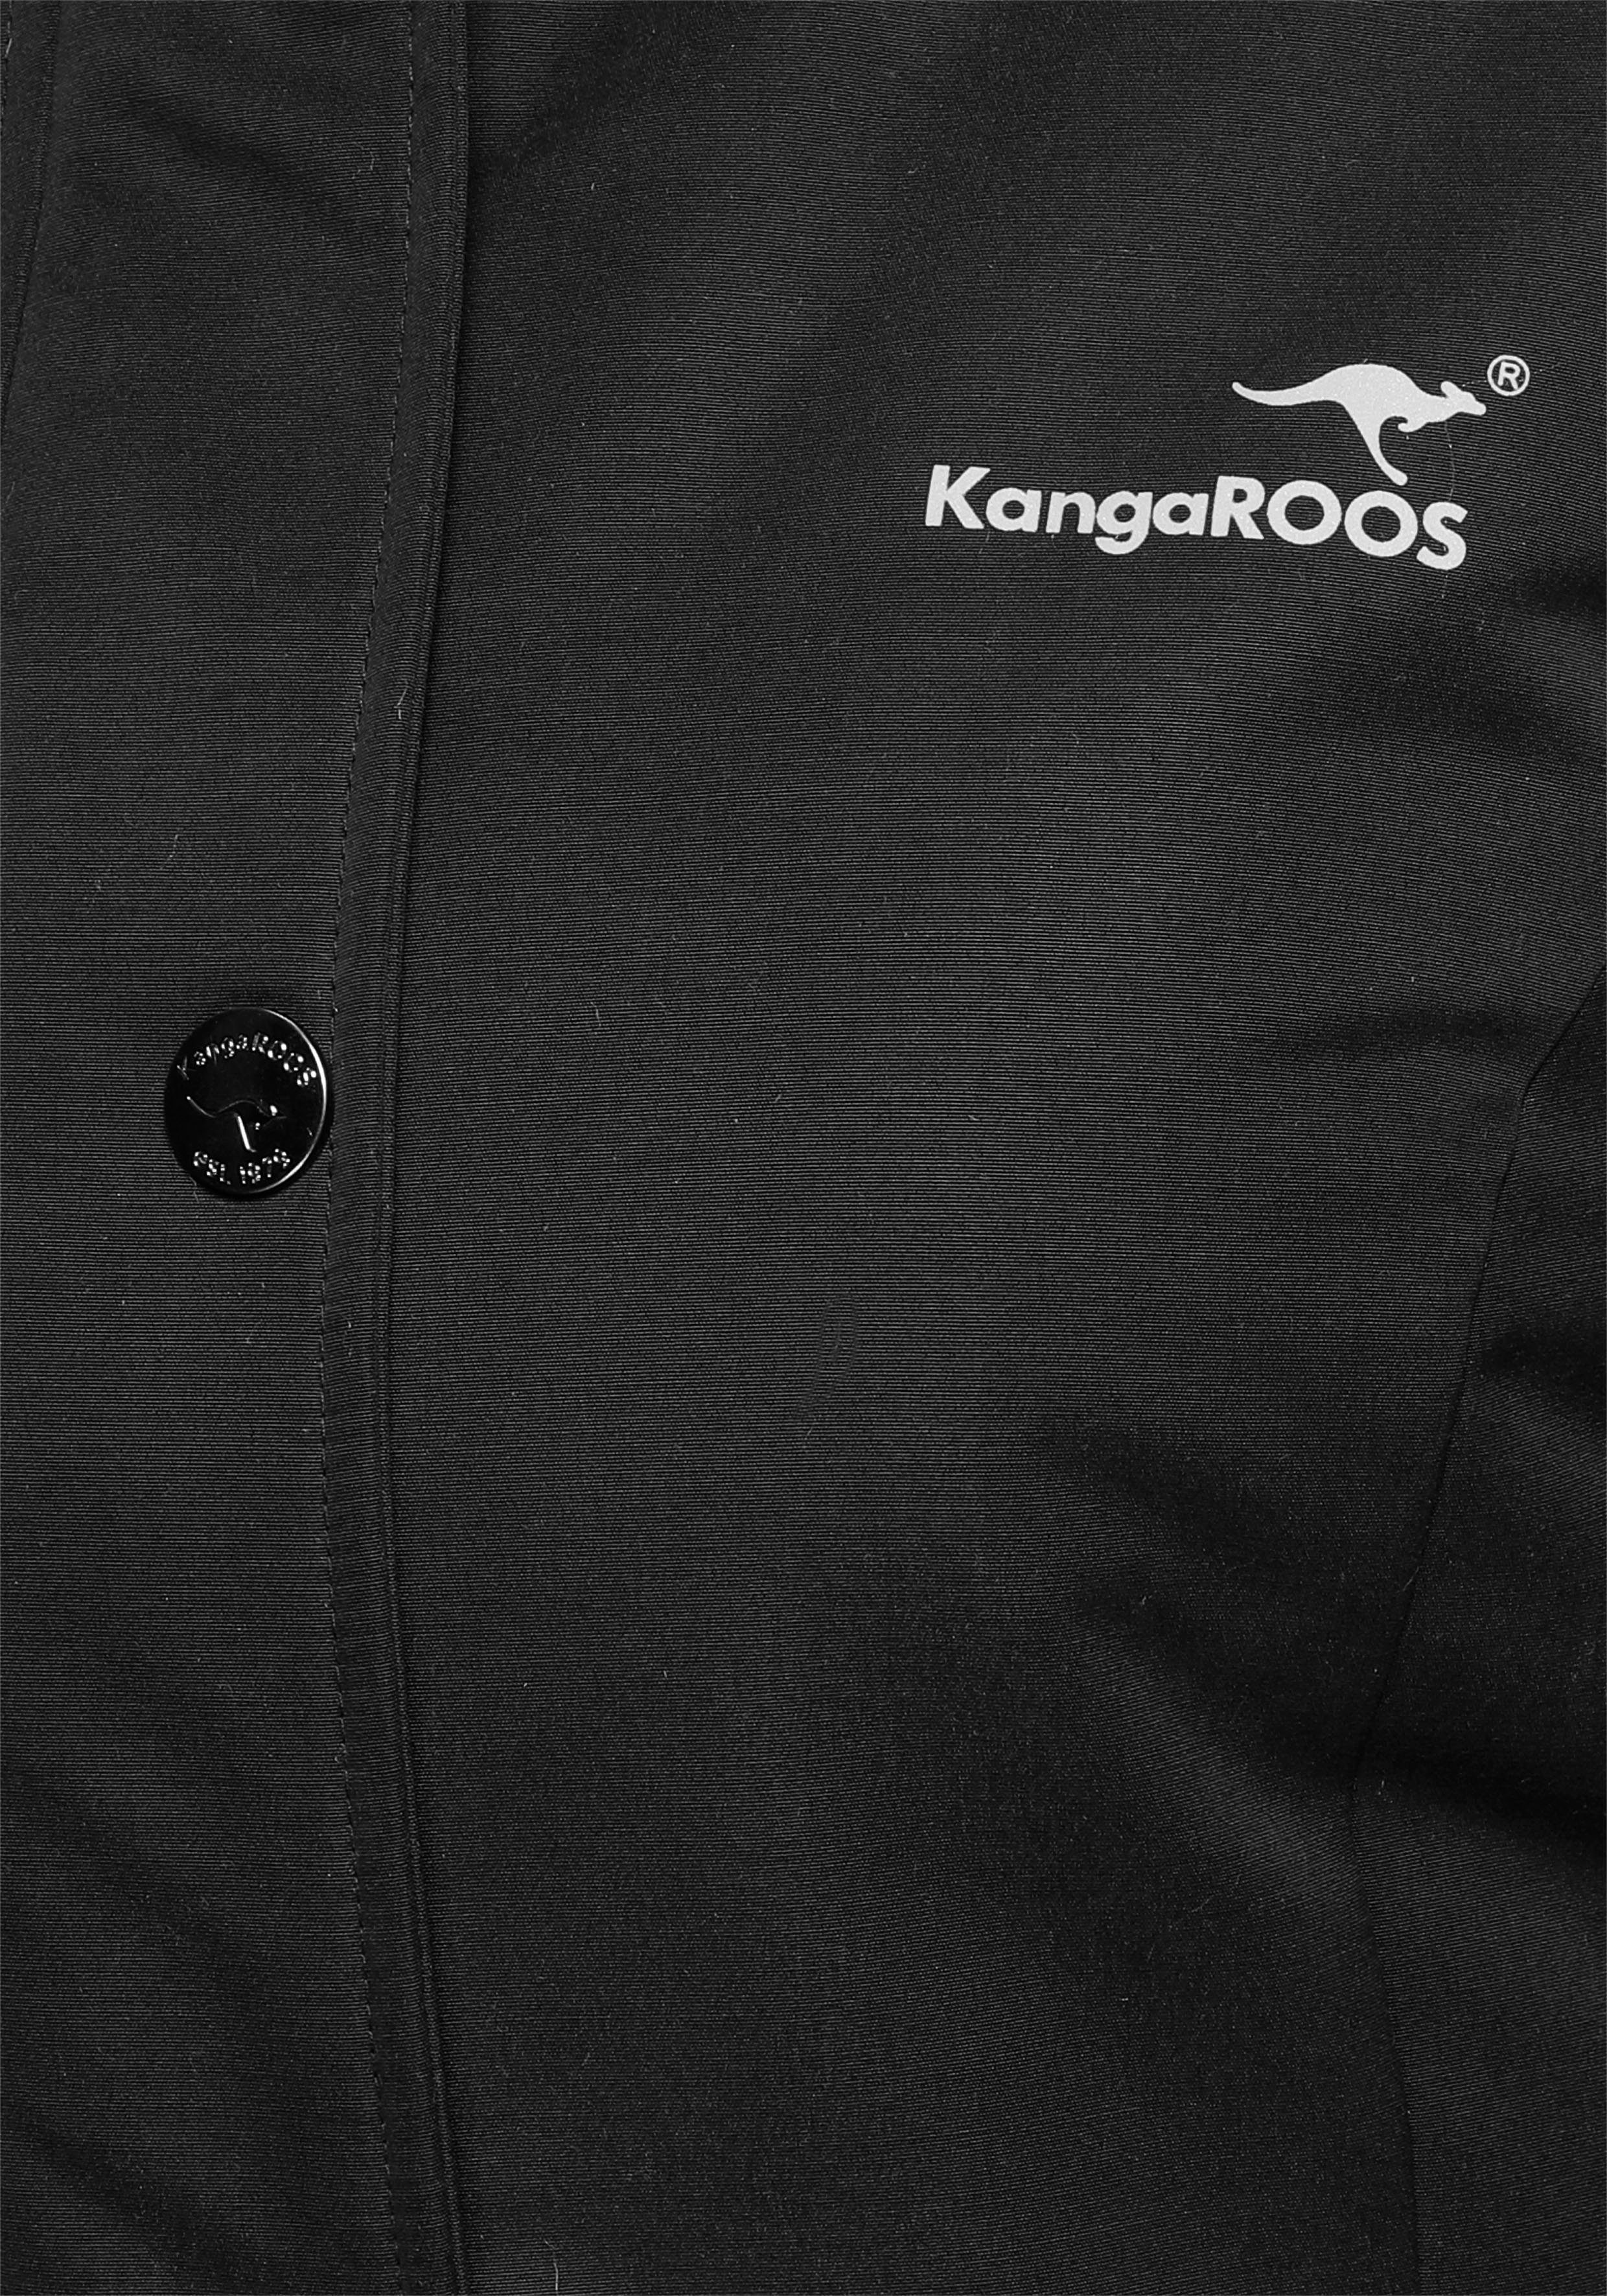 KangaROOS Langjacke mit 2-Wege-Reißverschluss Taschen schwarz vielen aus Material) und nachhaltigem (Langjacke